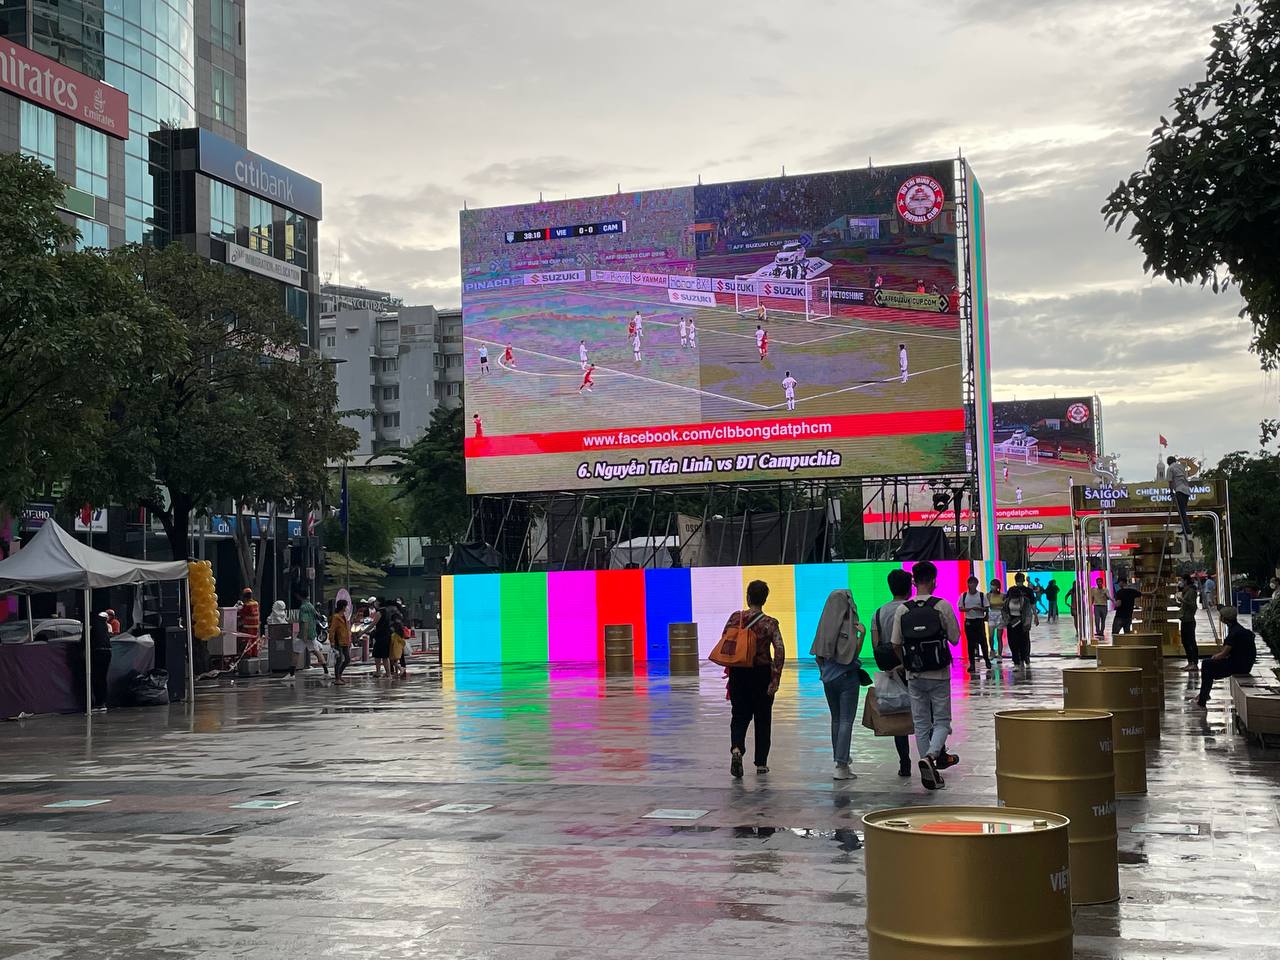 Ngay lúc này tại Mỹ Đình: Người dân đội mưa xếp hàng trước mấy tiếng đồng hồ để xem U23 Việt Nam đá chung kết SEA Games - Ảnh 12.